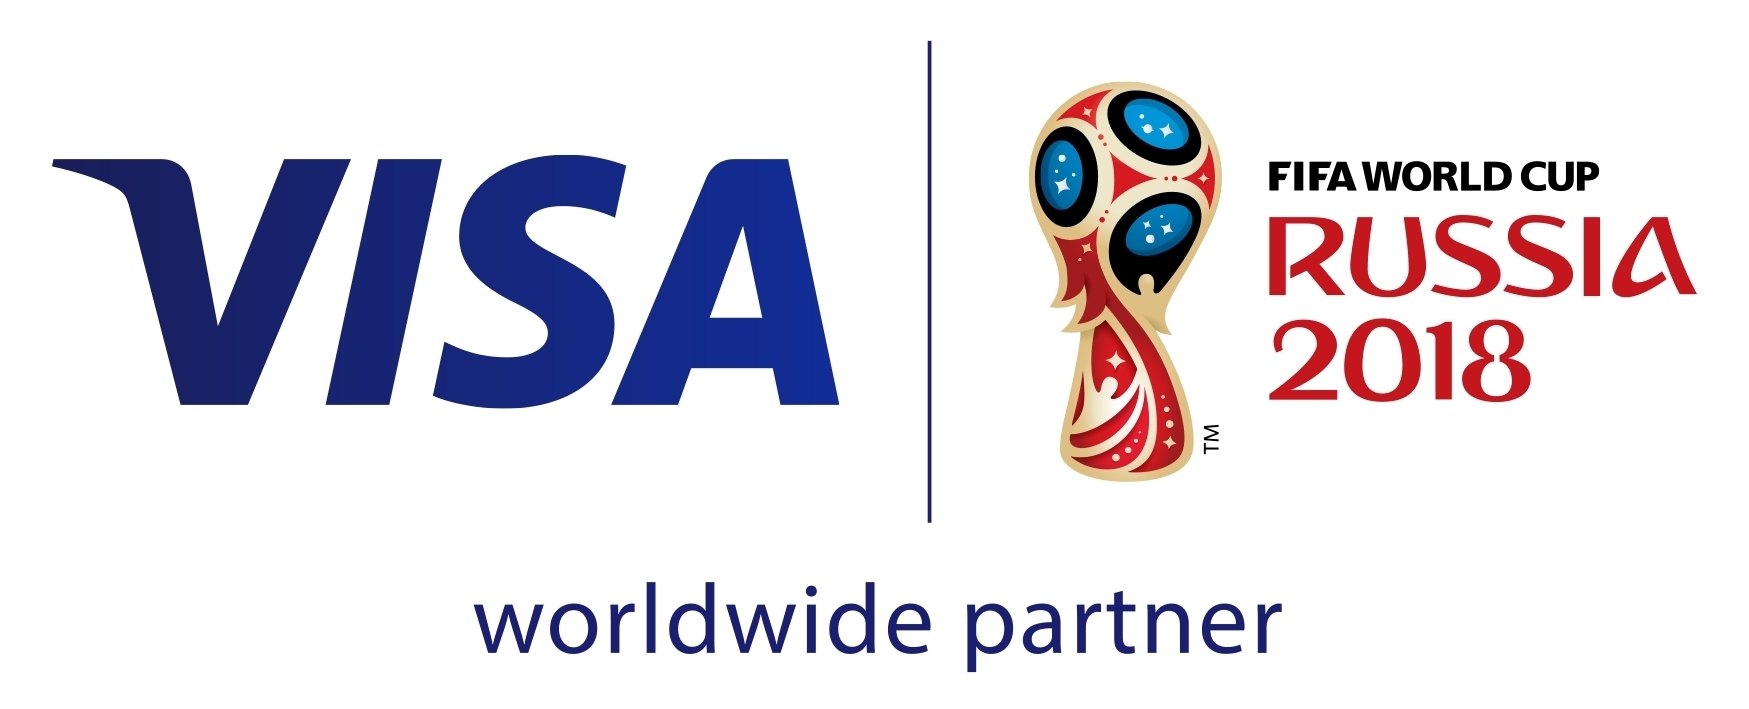 18 Fifaワールドカップ ロシア大会でビザがサッカー ファンの強い味方に Business Wire